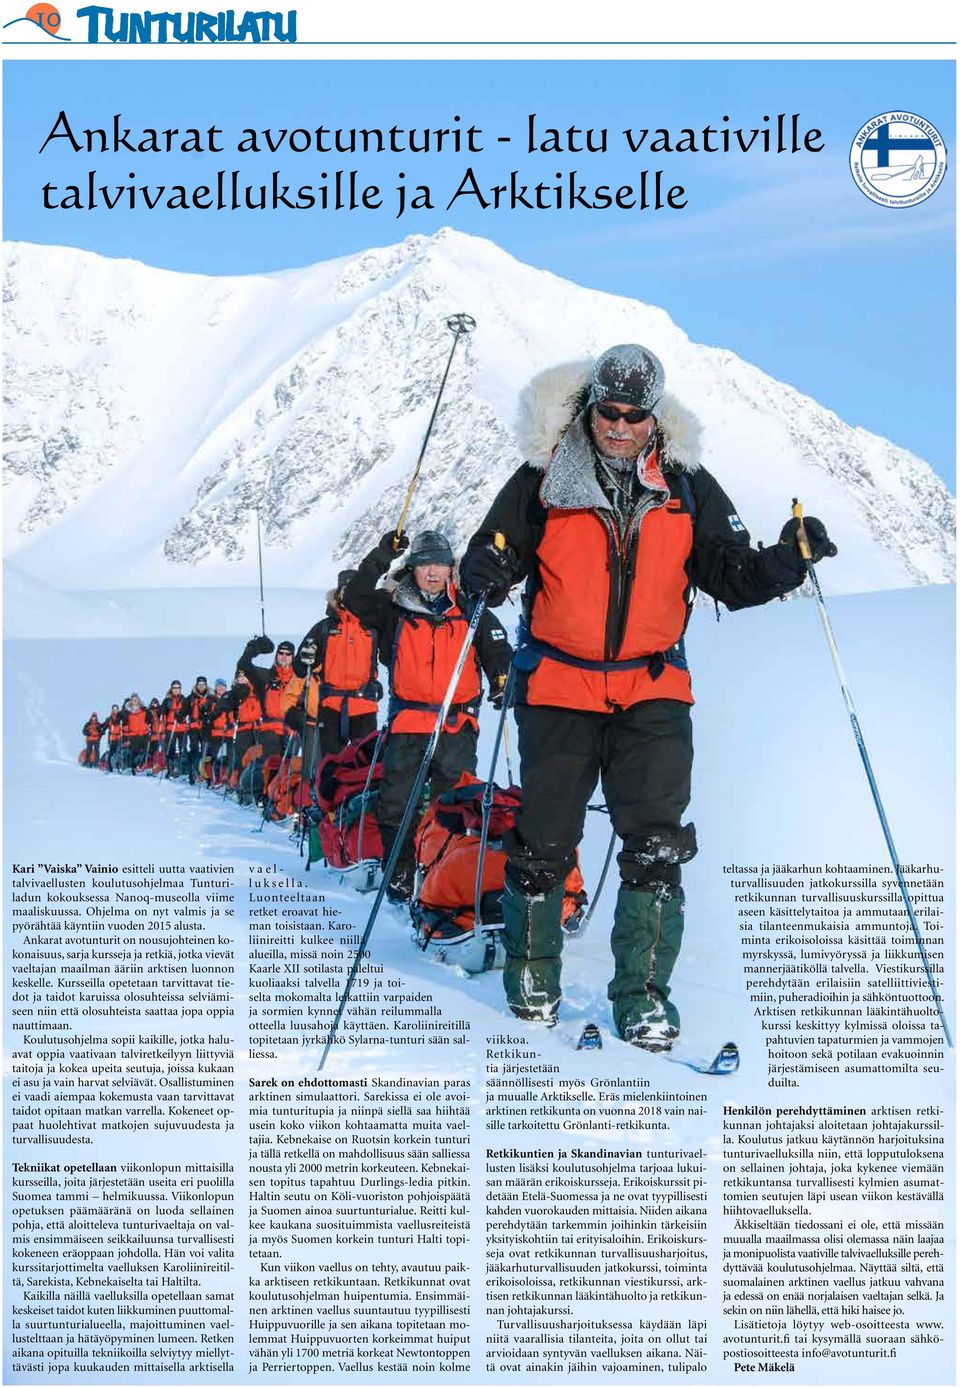 Ankarat avotunturit on nousujohteinen kokonaisuus, sarja kursseja ja retkiä, jotka vievät vaeltajan maailman ääriin arktisen luonnon keskelle.